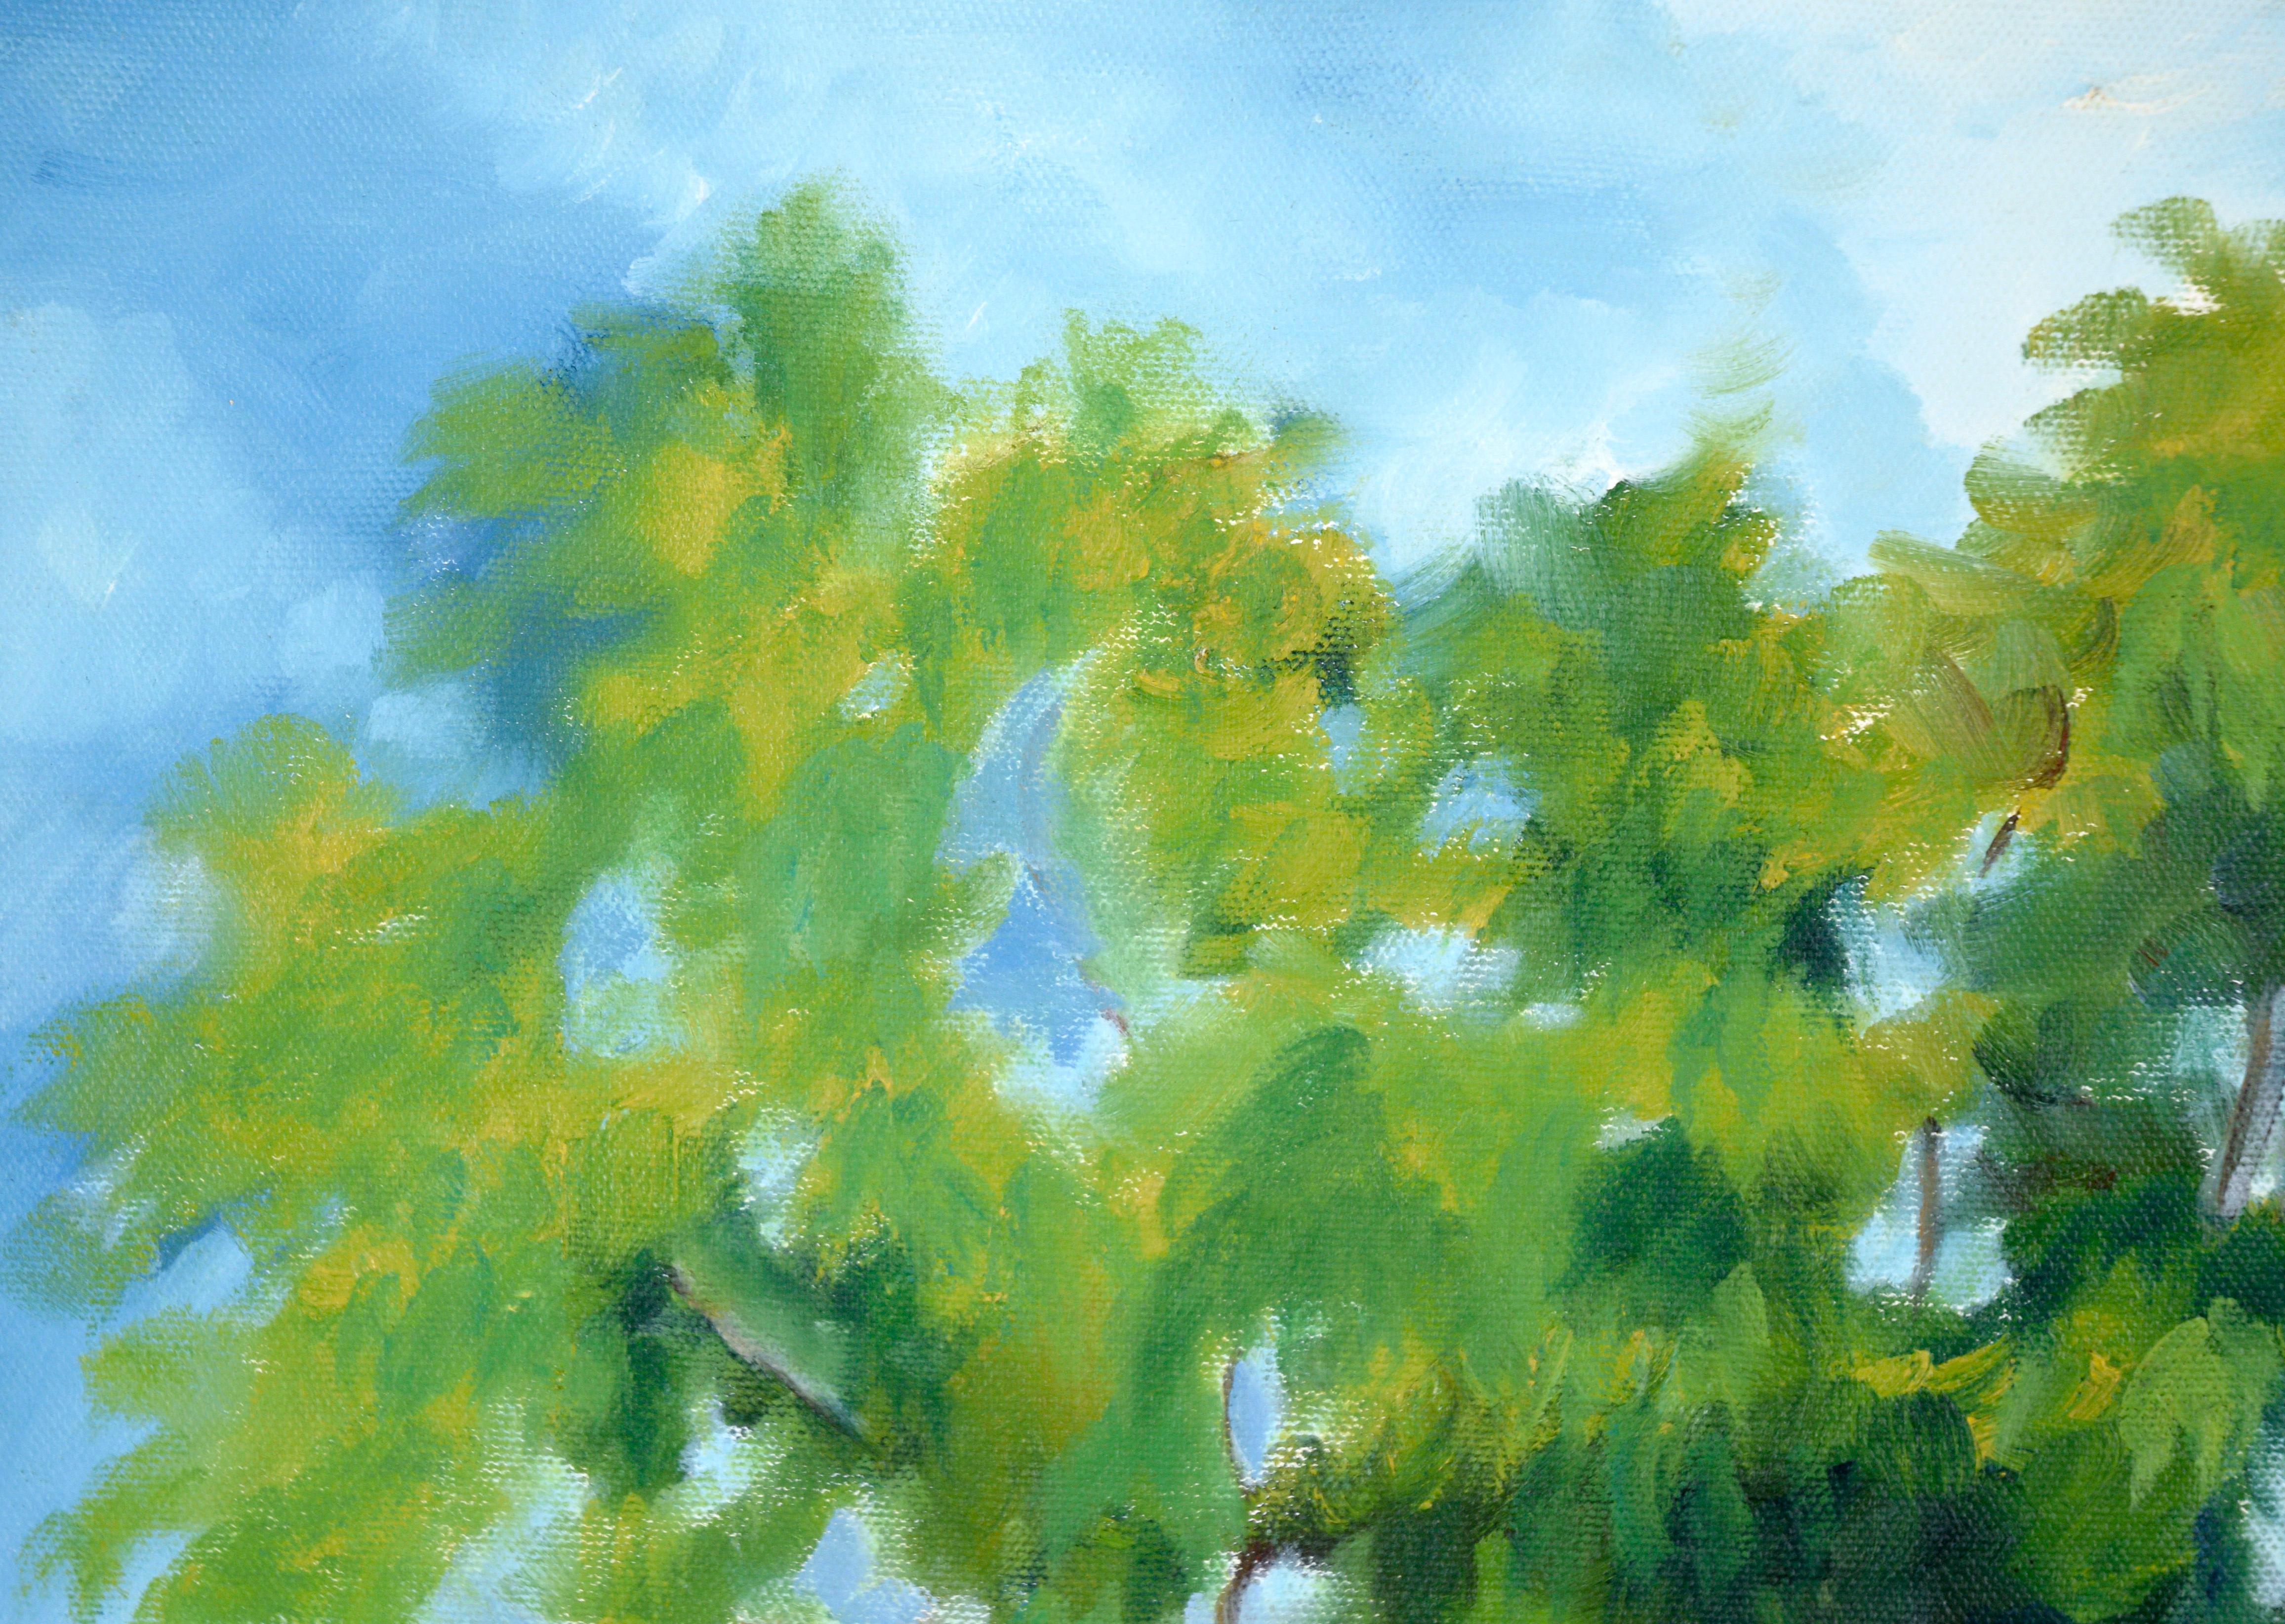 Walking the Path Under the Trees – Landschaft in Acryl auf Leinwand – Painting von Unknown